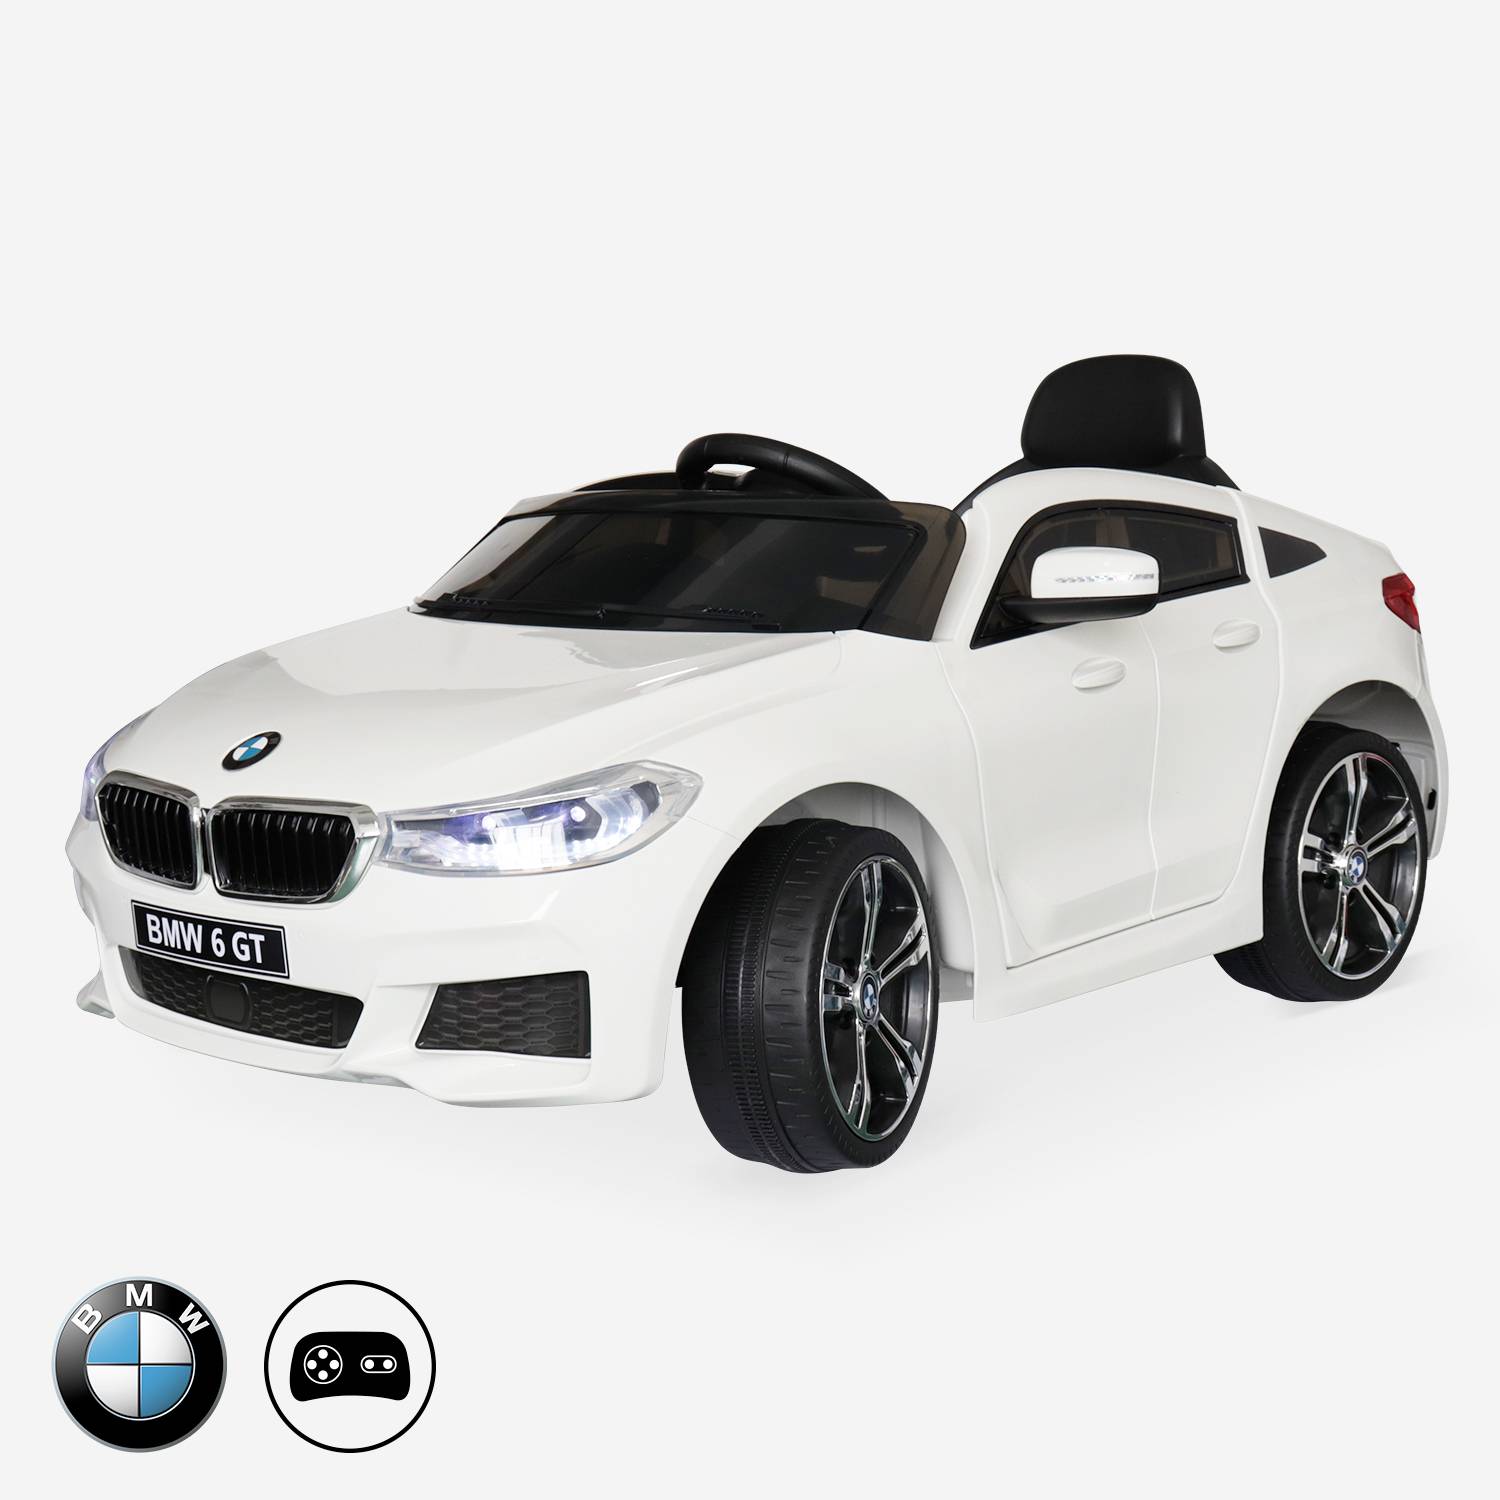 BMW Série 6 GT Gran Turismo branco, carro elétrico para crianças 12V 4 Ah, 1 lugar, com rádio e controlo remoto Photo1